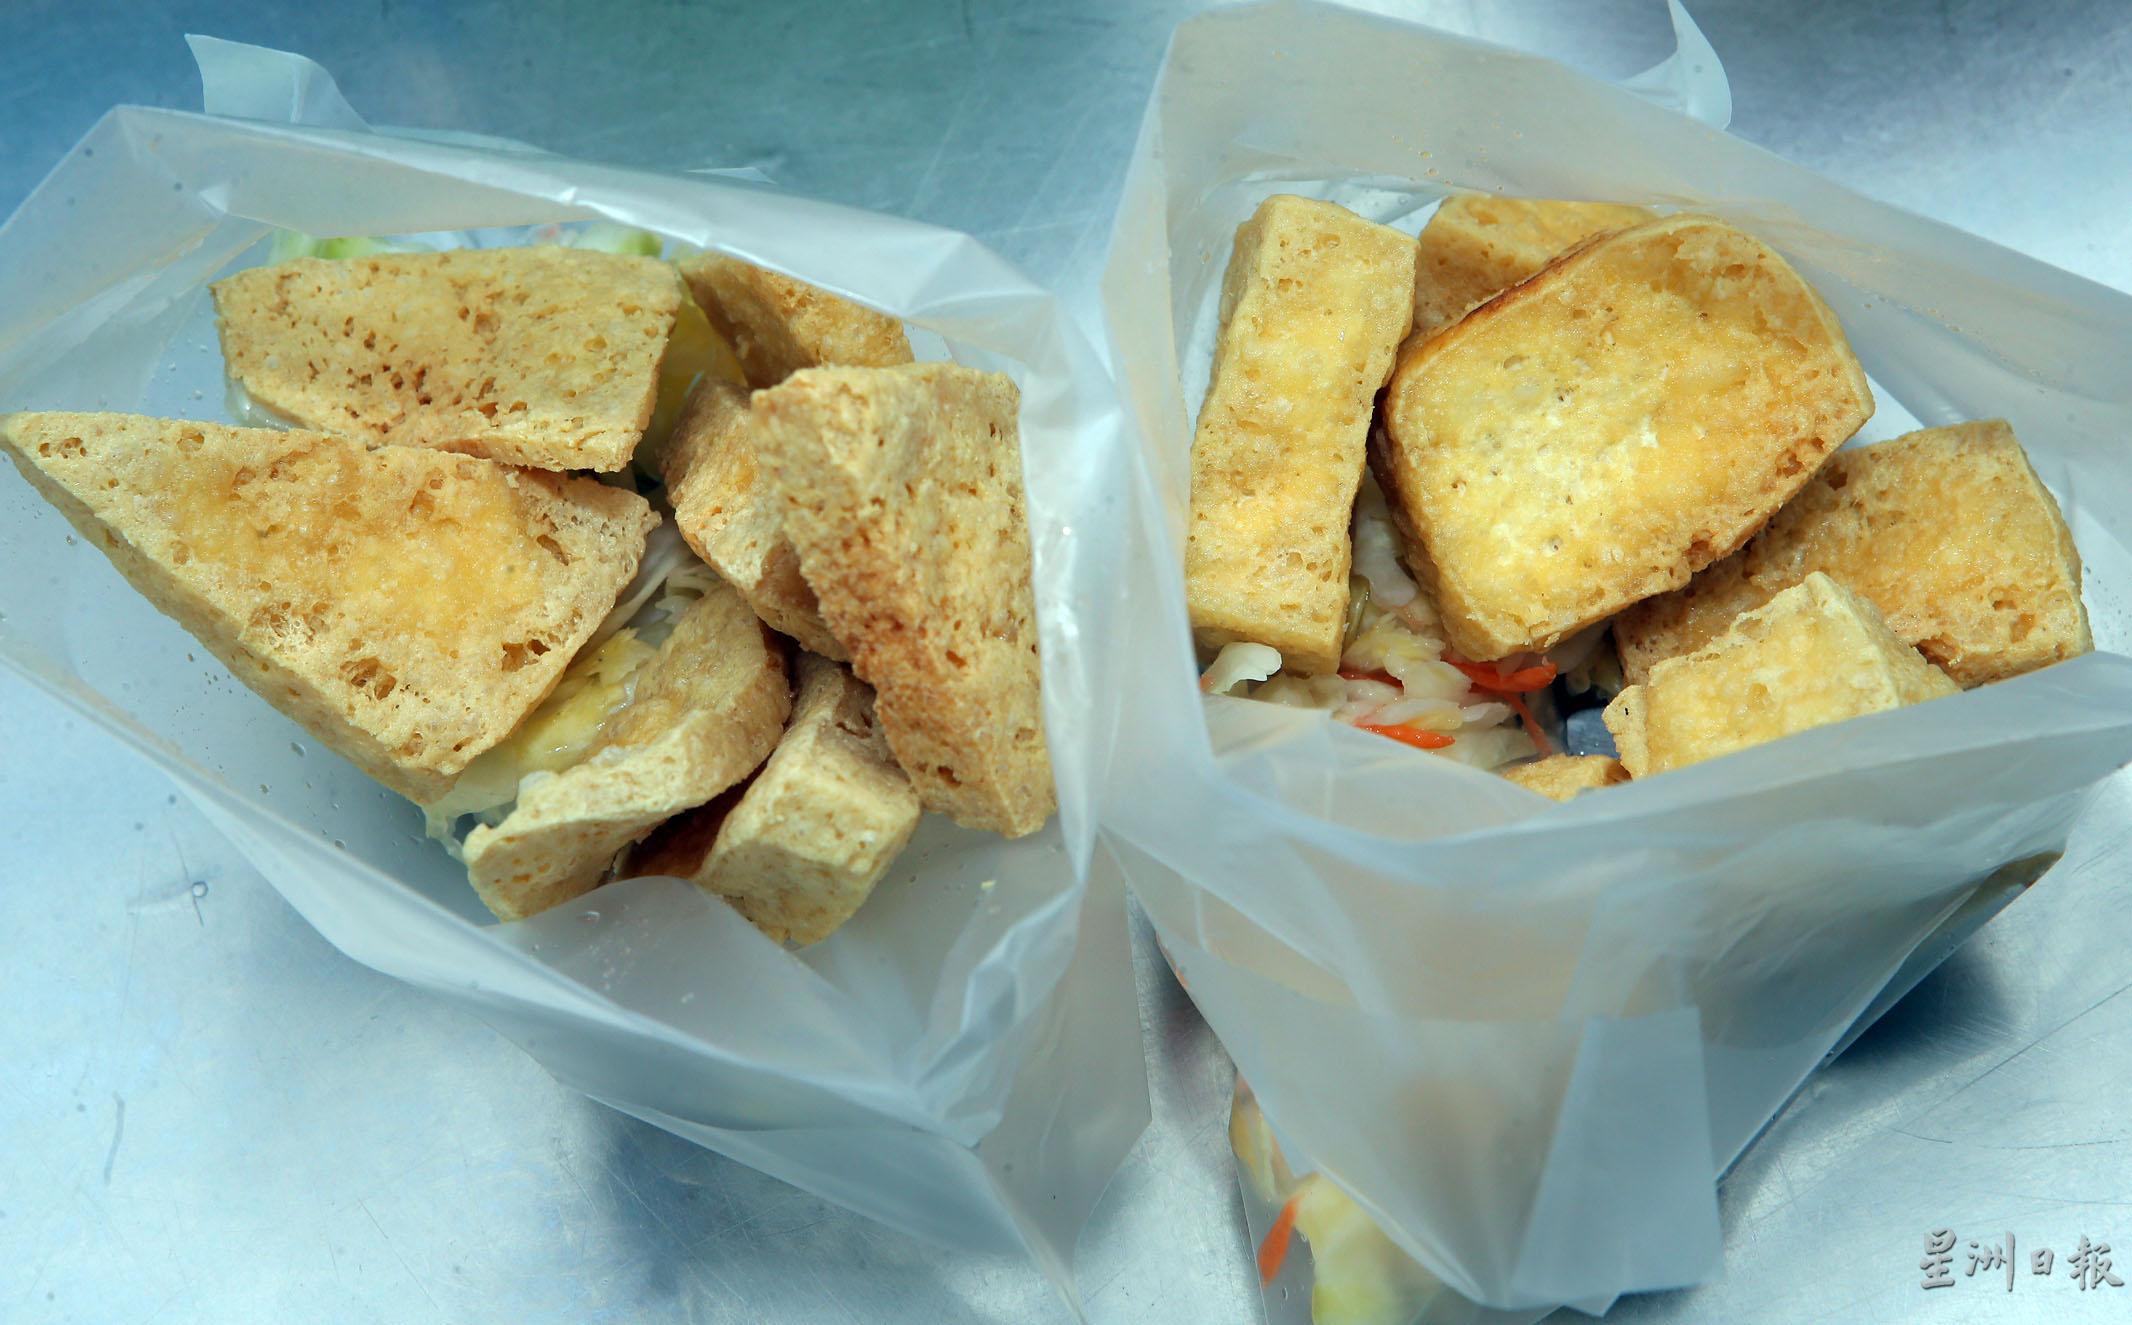 三角形和四方形臭豆腐各有特色，皆让人食指大动。